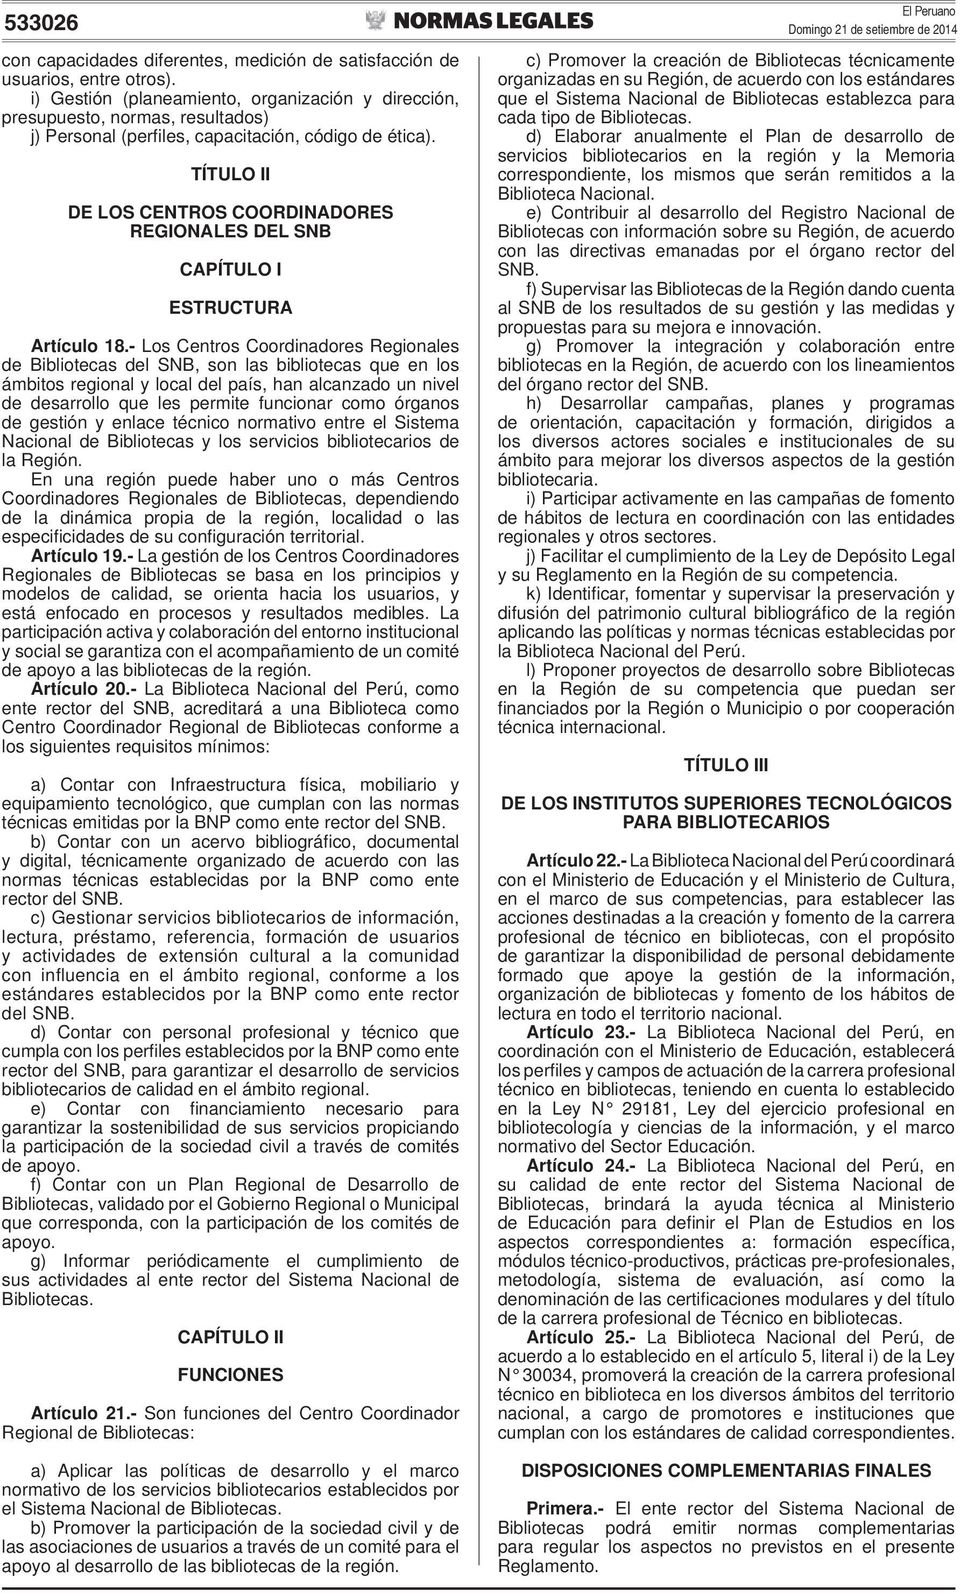 TÍTULO II DE LOS CENTROS COORDINADORES REGIONALES DEL SNB CAPÍTULO I ESTRUCTURA Artículo 18.